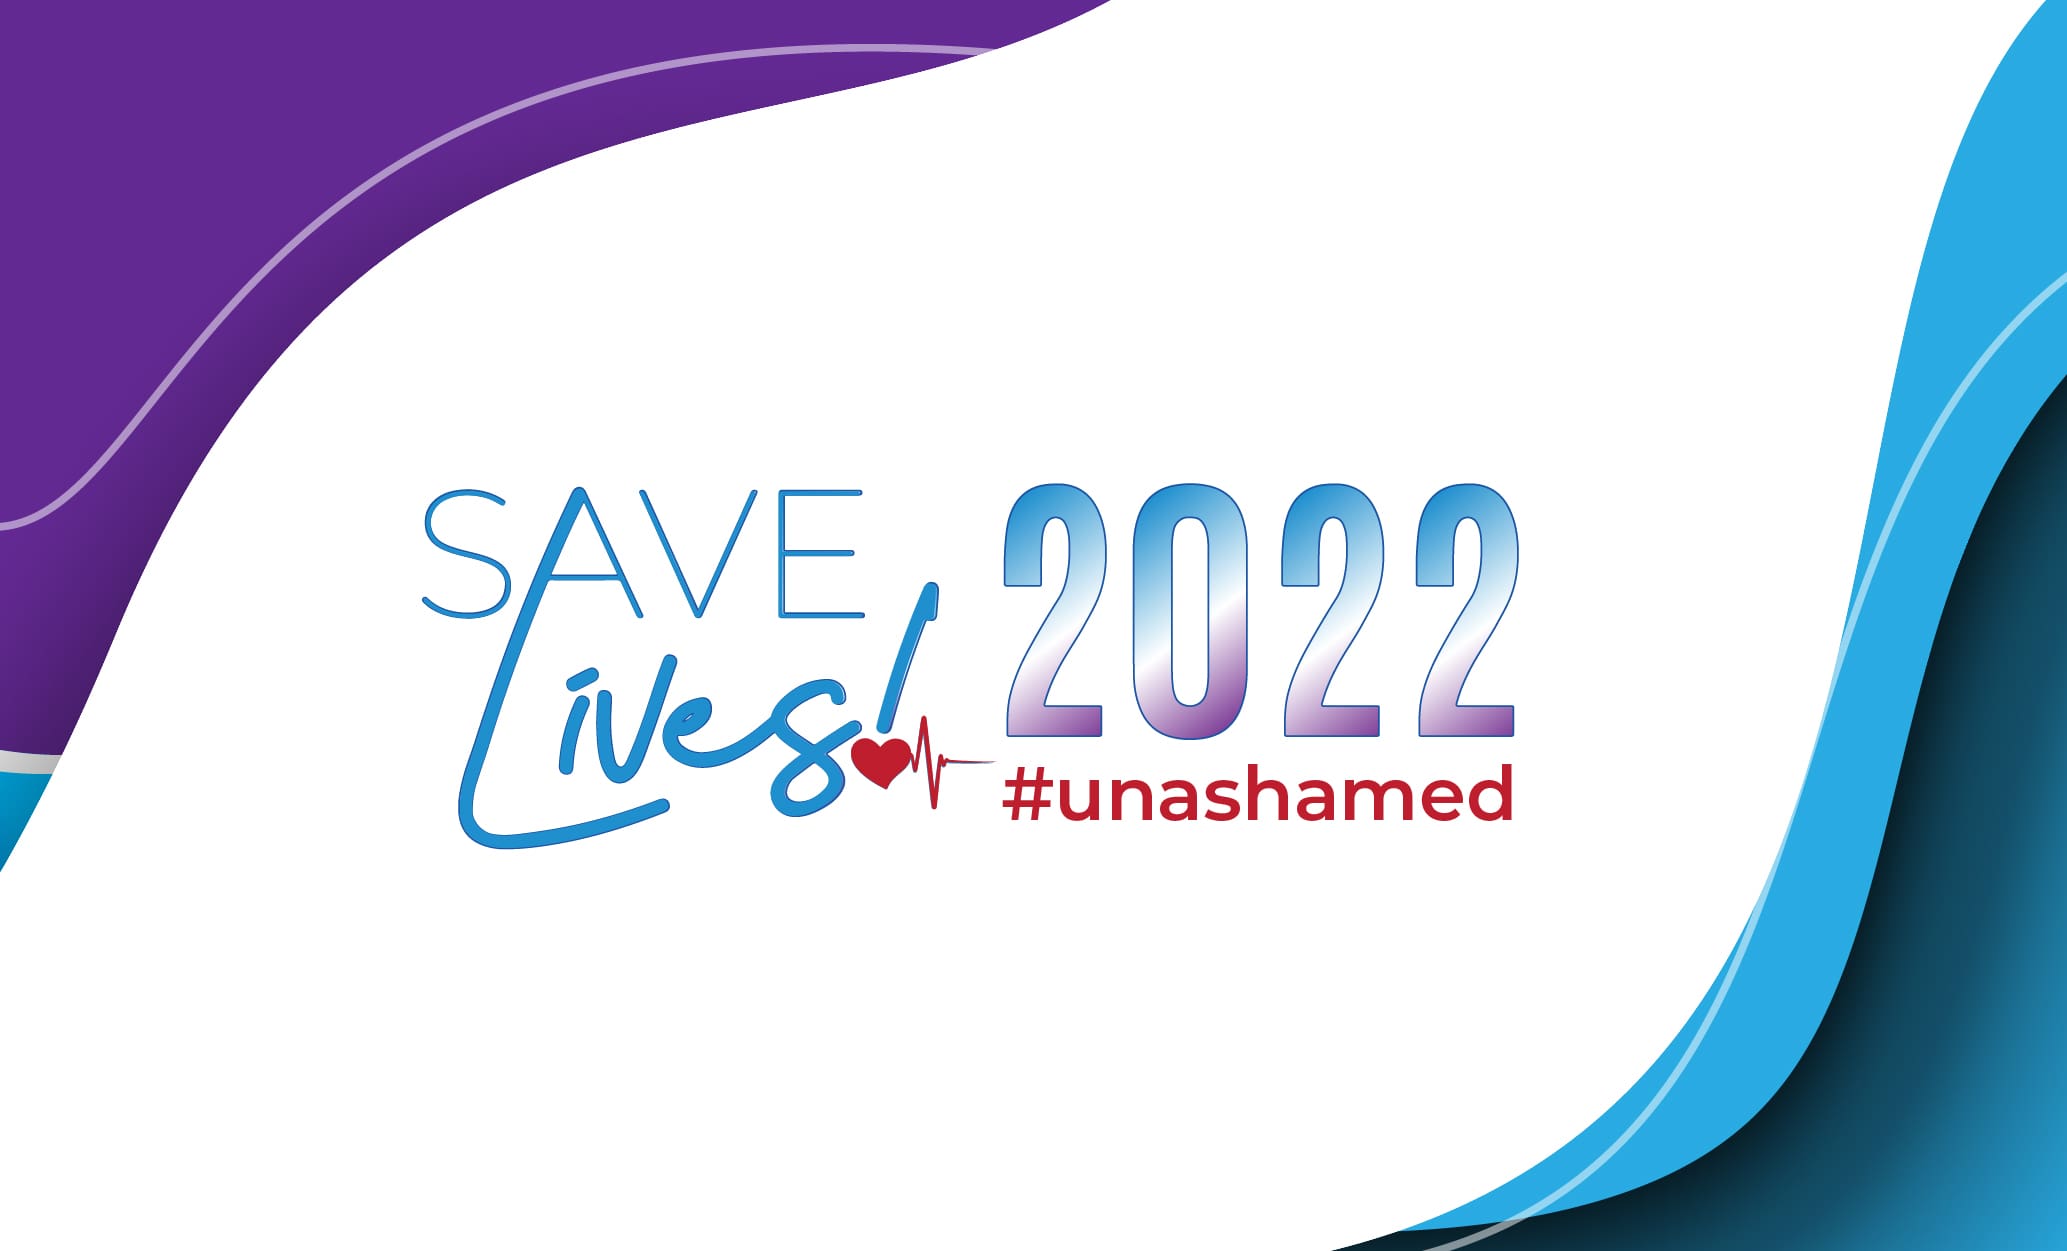 Save Lives 2022 #unashamed